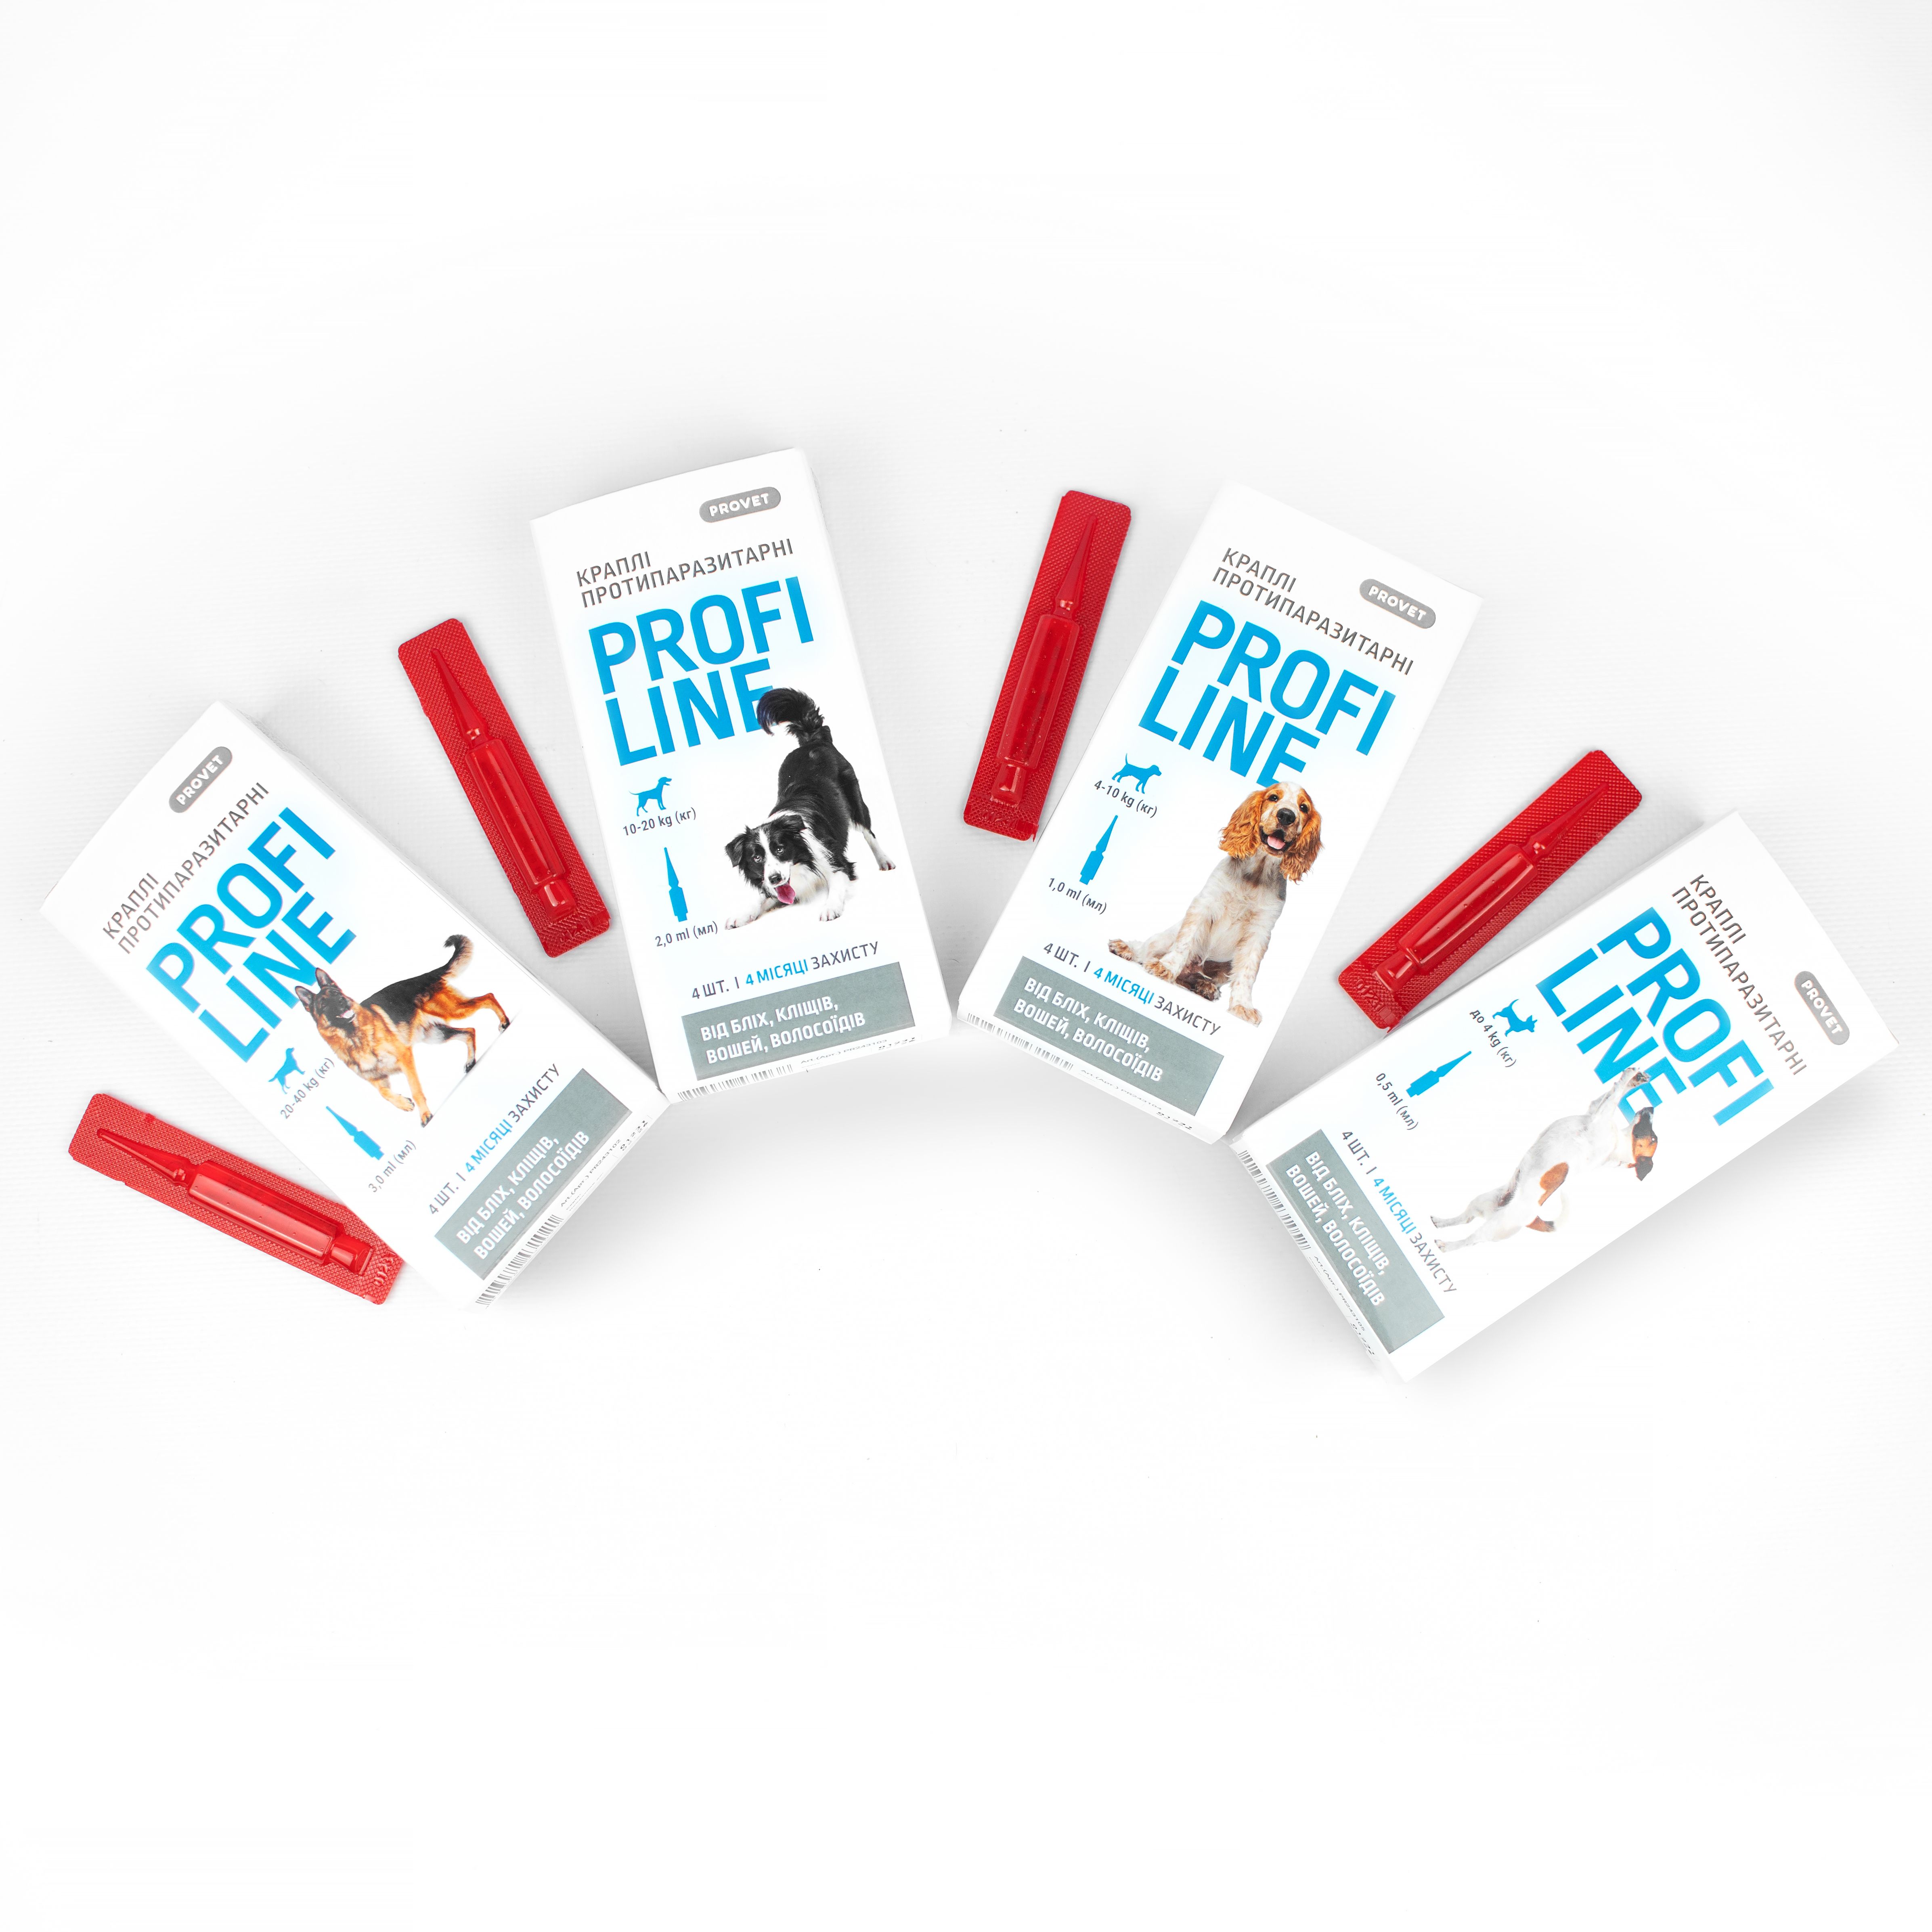 Капли на холку для собак ProVET Profiline от внешних паразитов, от 4 до 10 кг, 4 пипетки по 1 мл - фото 3